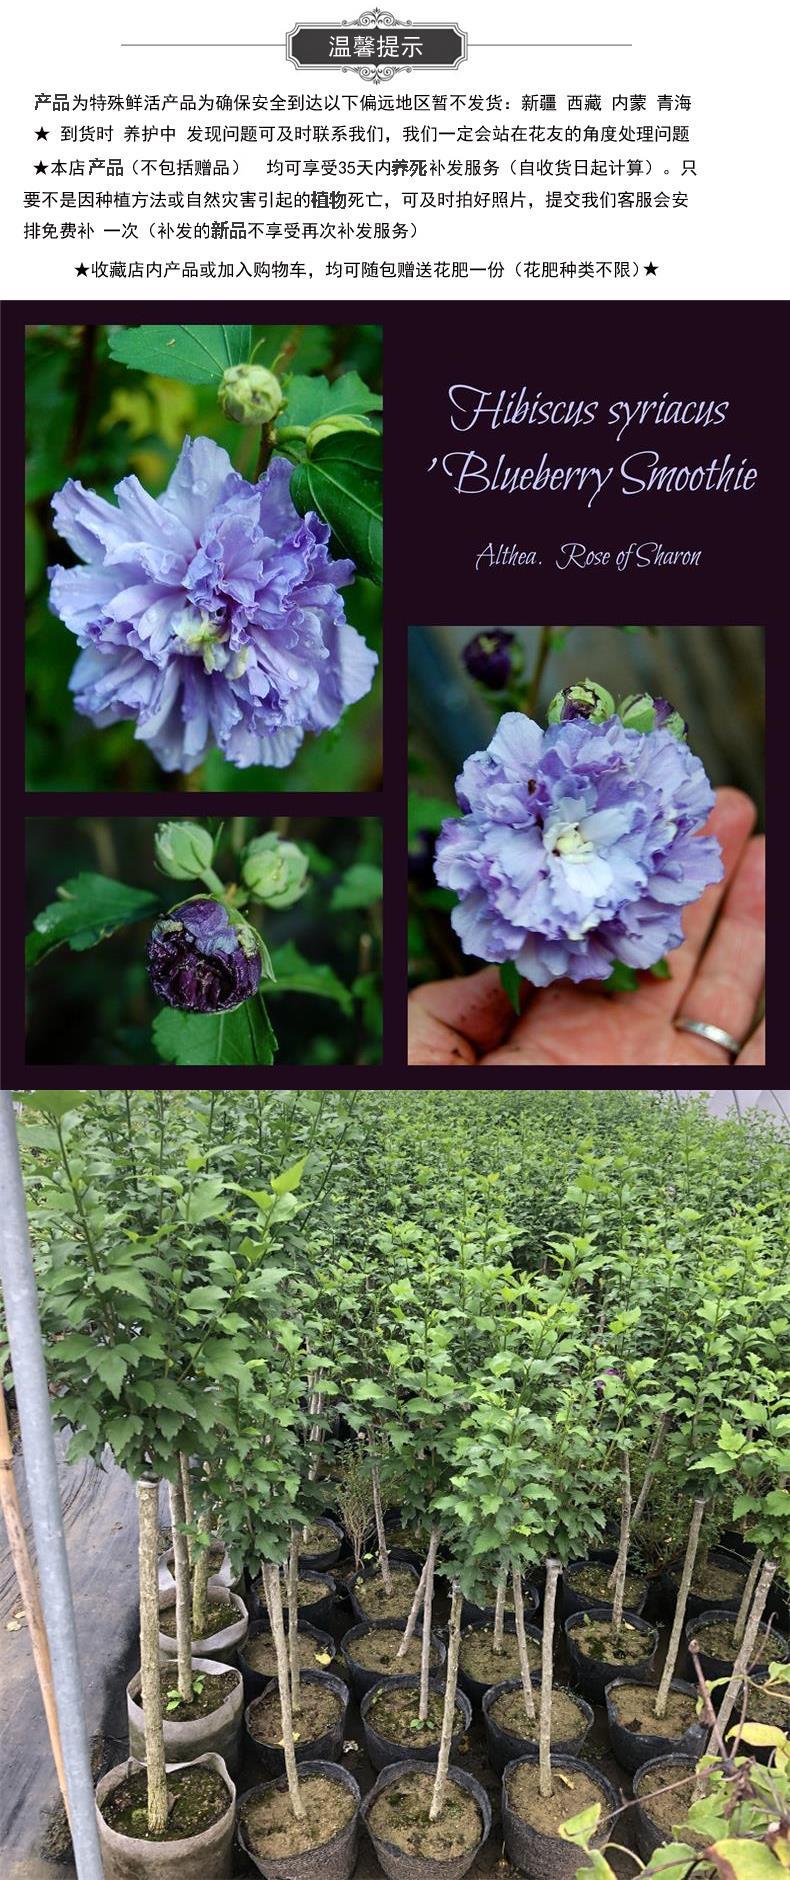 紫芋花卉,紫芋盆栽怎么养